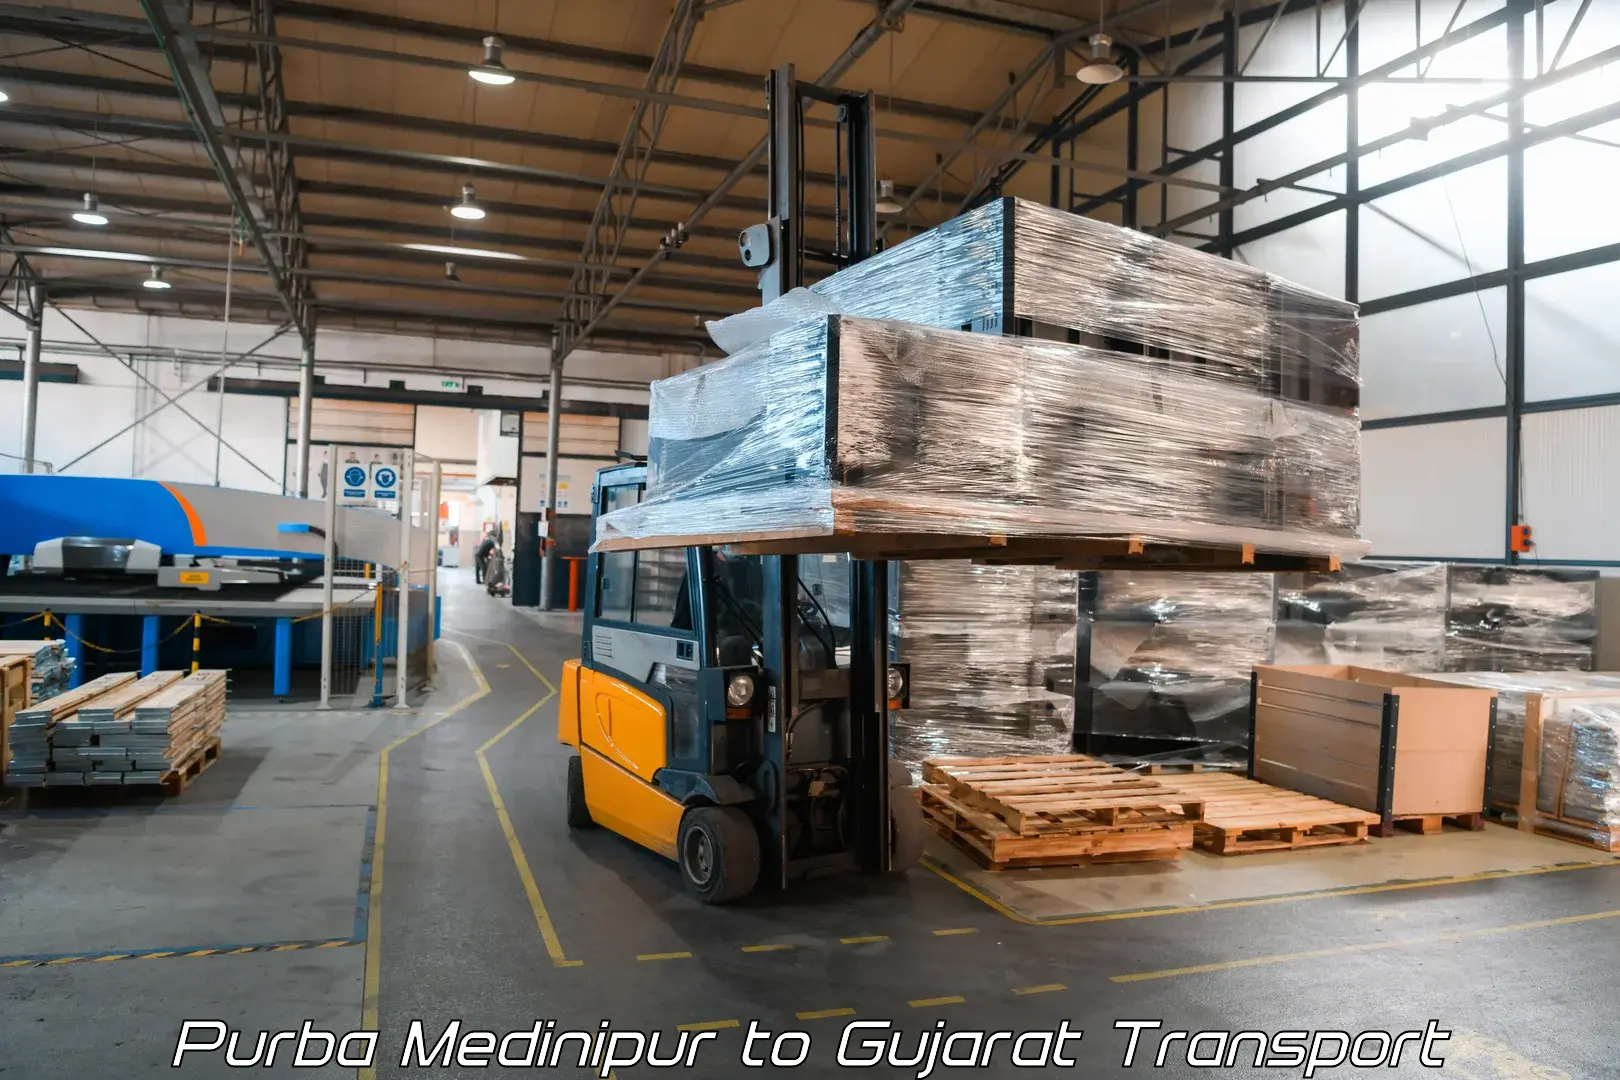 Transport in sharing Purba Medinipur to Gujarat